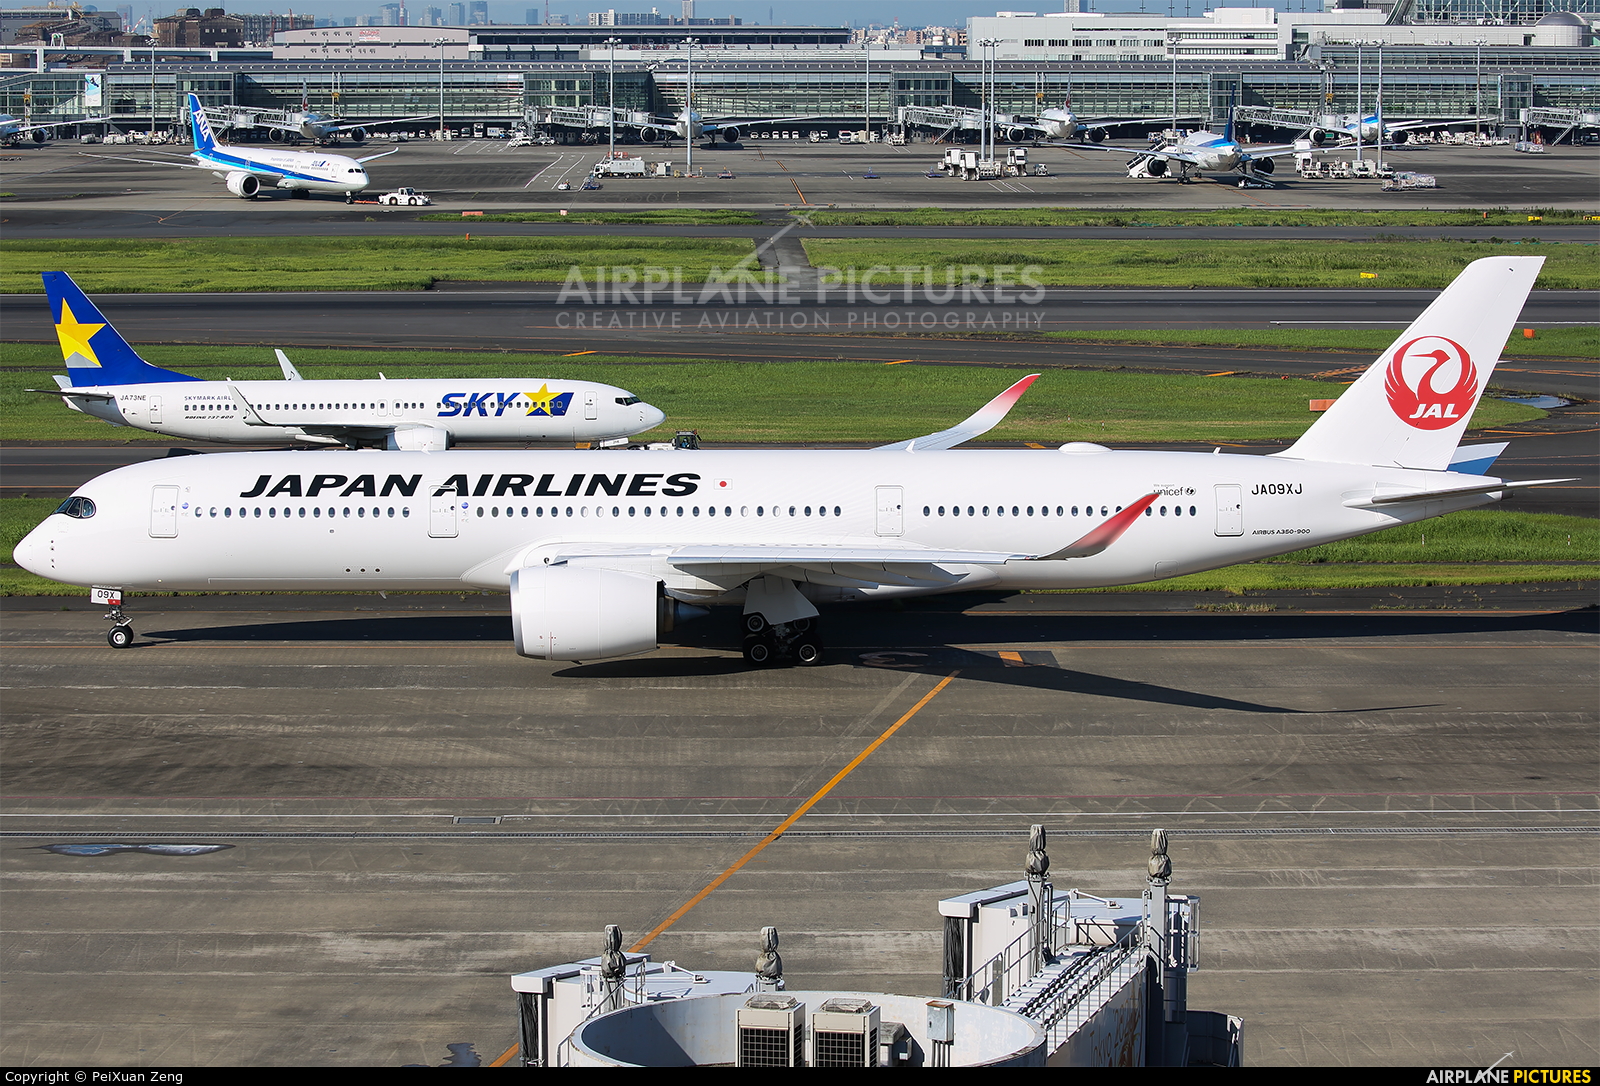 JAL - Japan Airlines JA09XJ aircraft at Tokyo - Haneda Intl